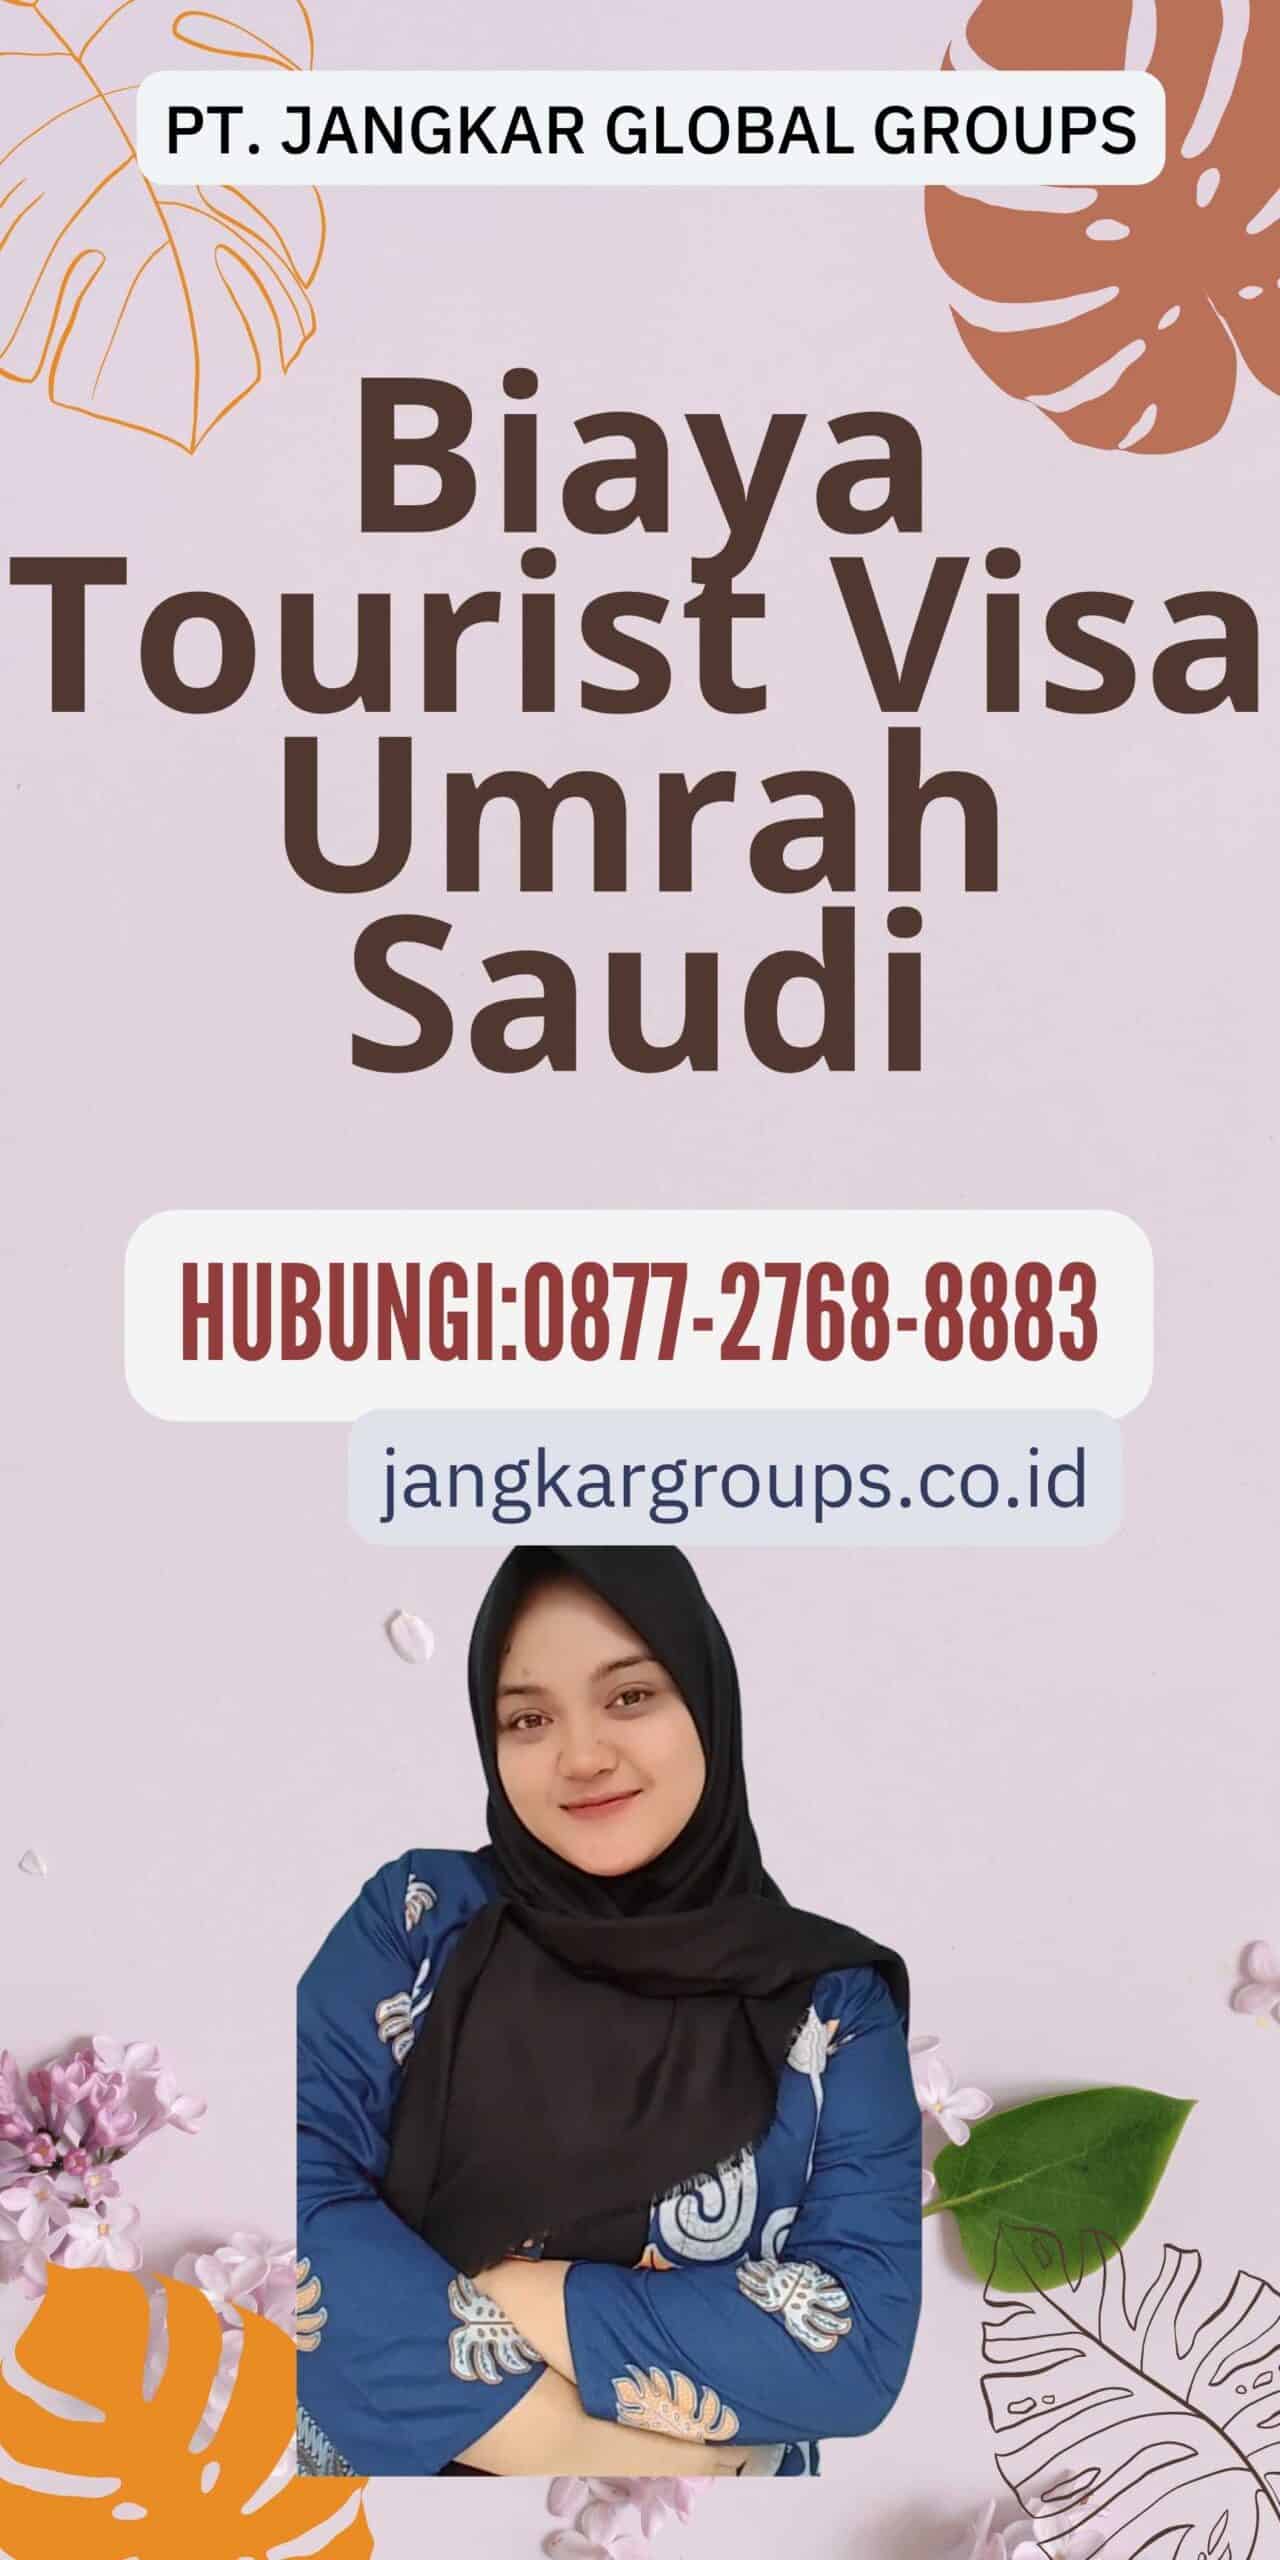 Biaya Tourist Visa Umrah Saudi